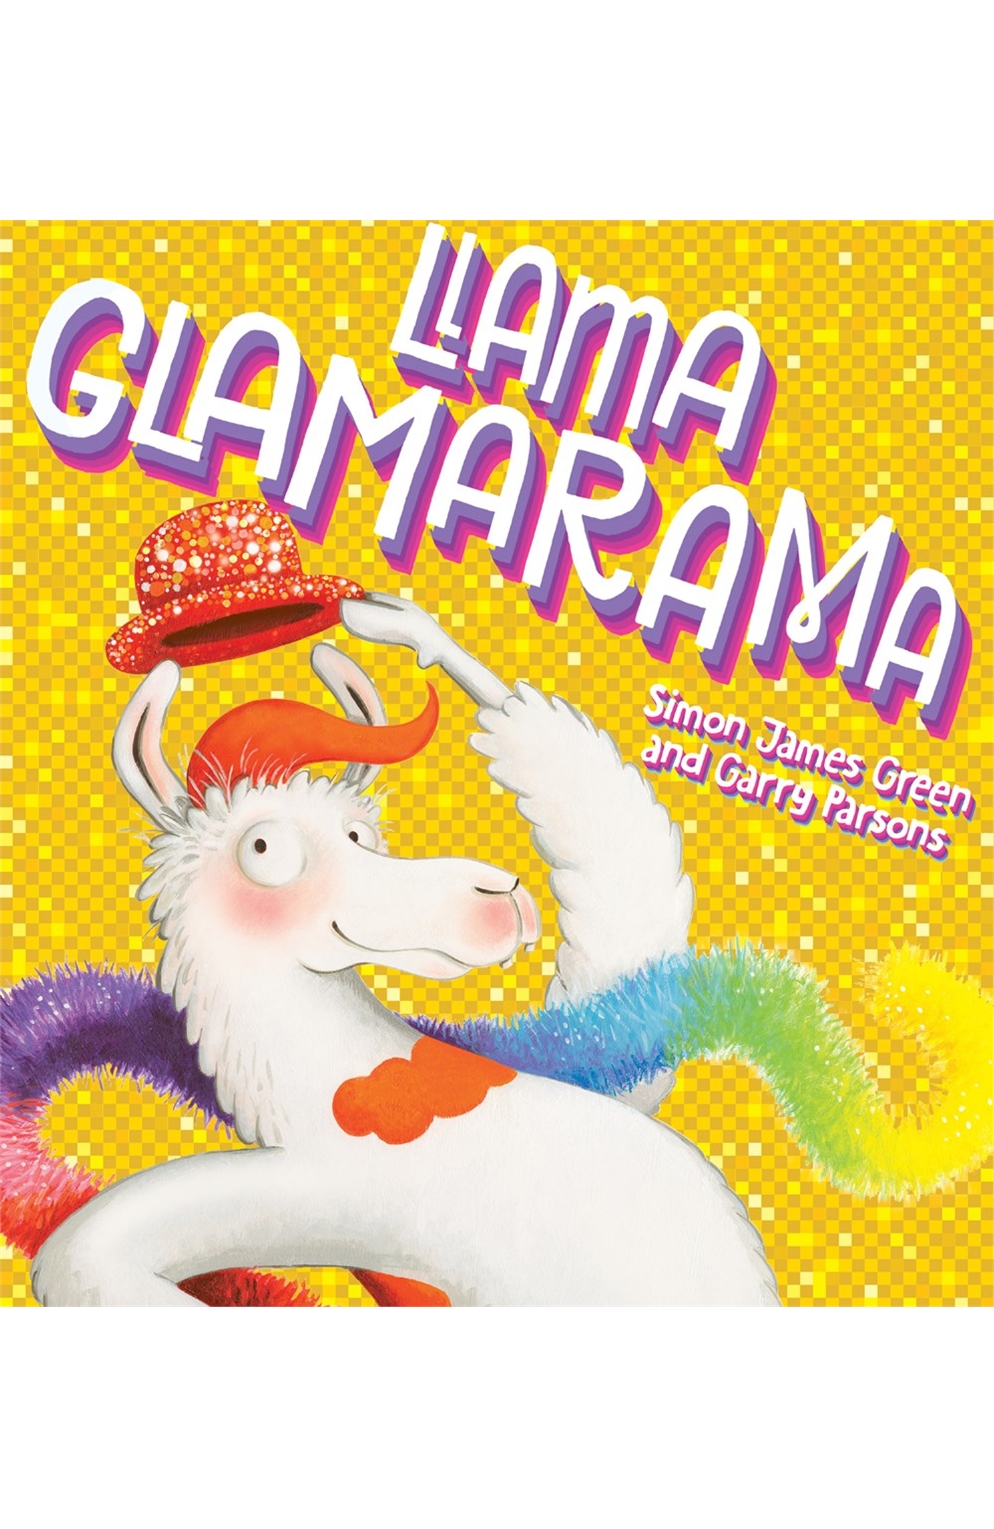 Llama Glamarama